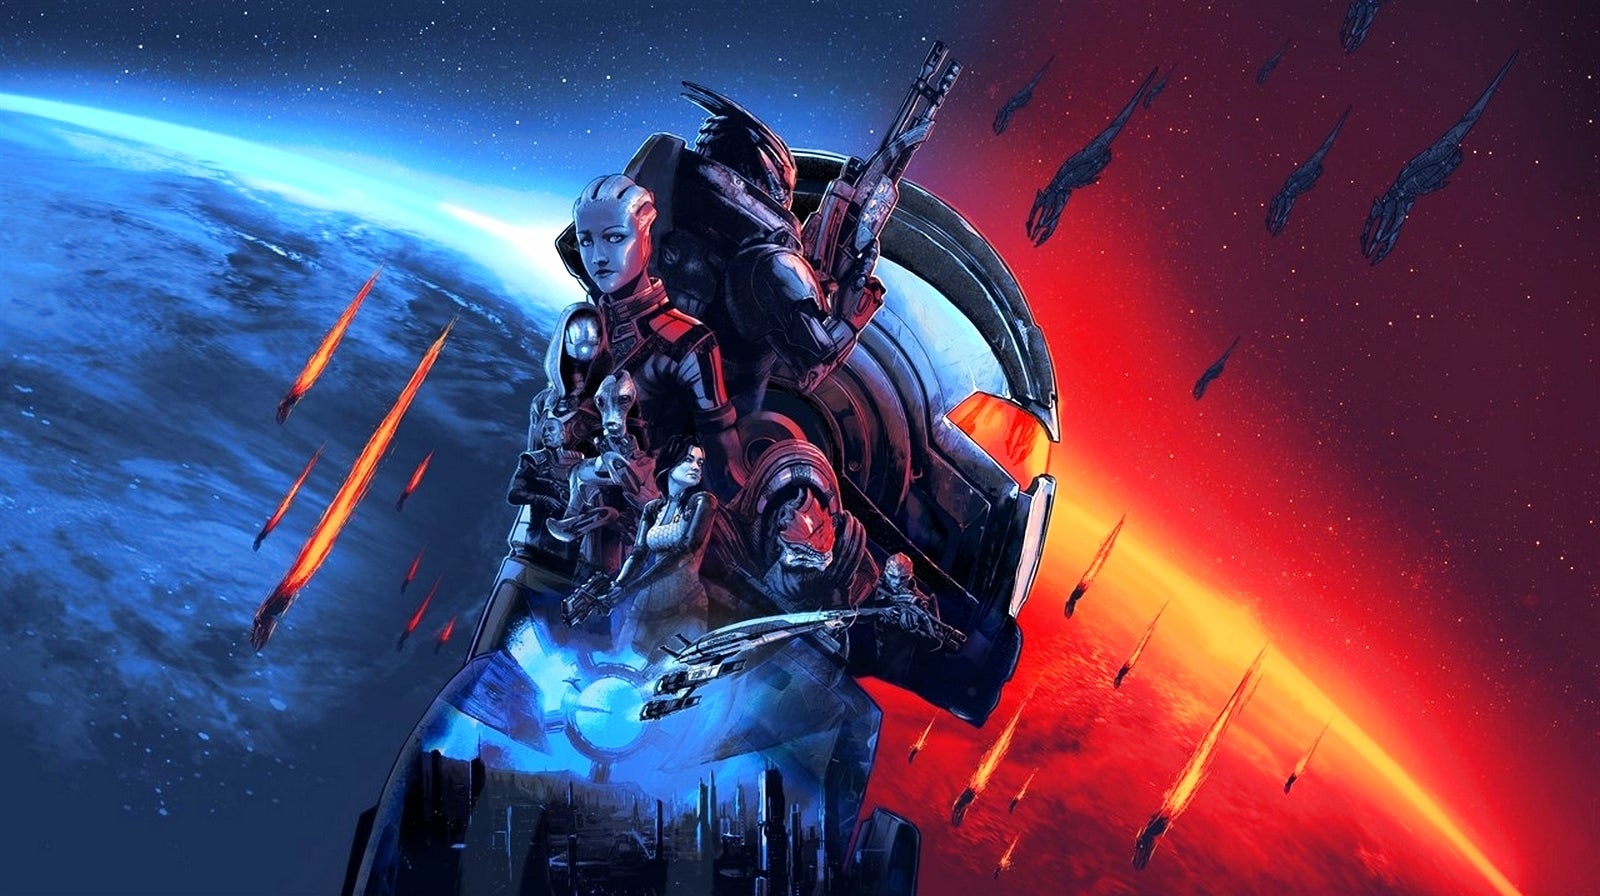 Bilder zu Mass Effect Legendary Edition Test - Leben und sterben lassen in 4K